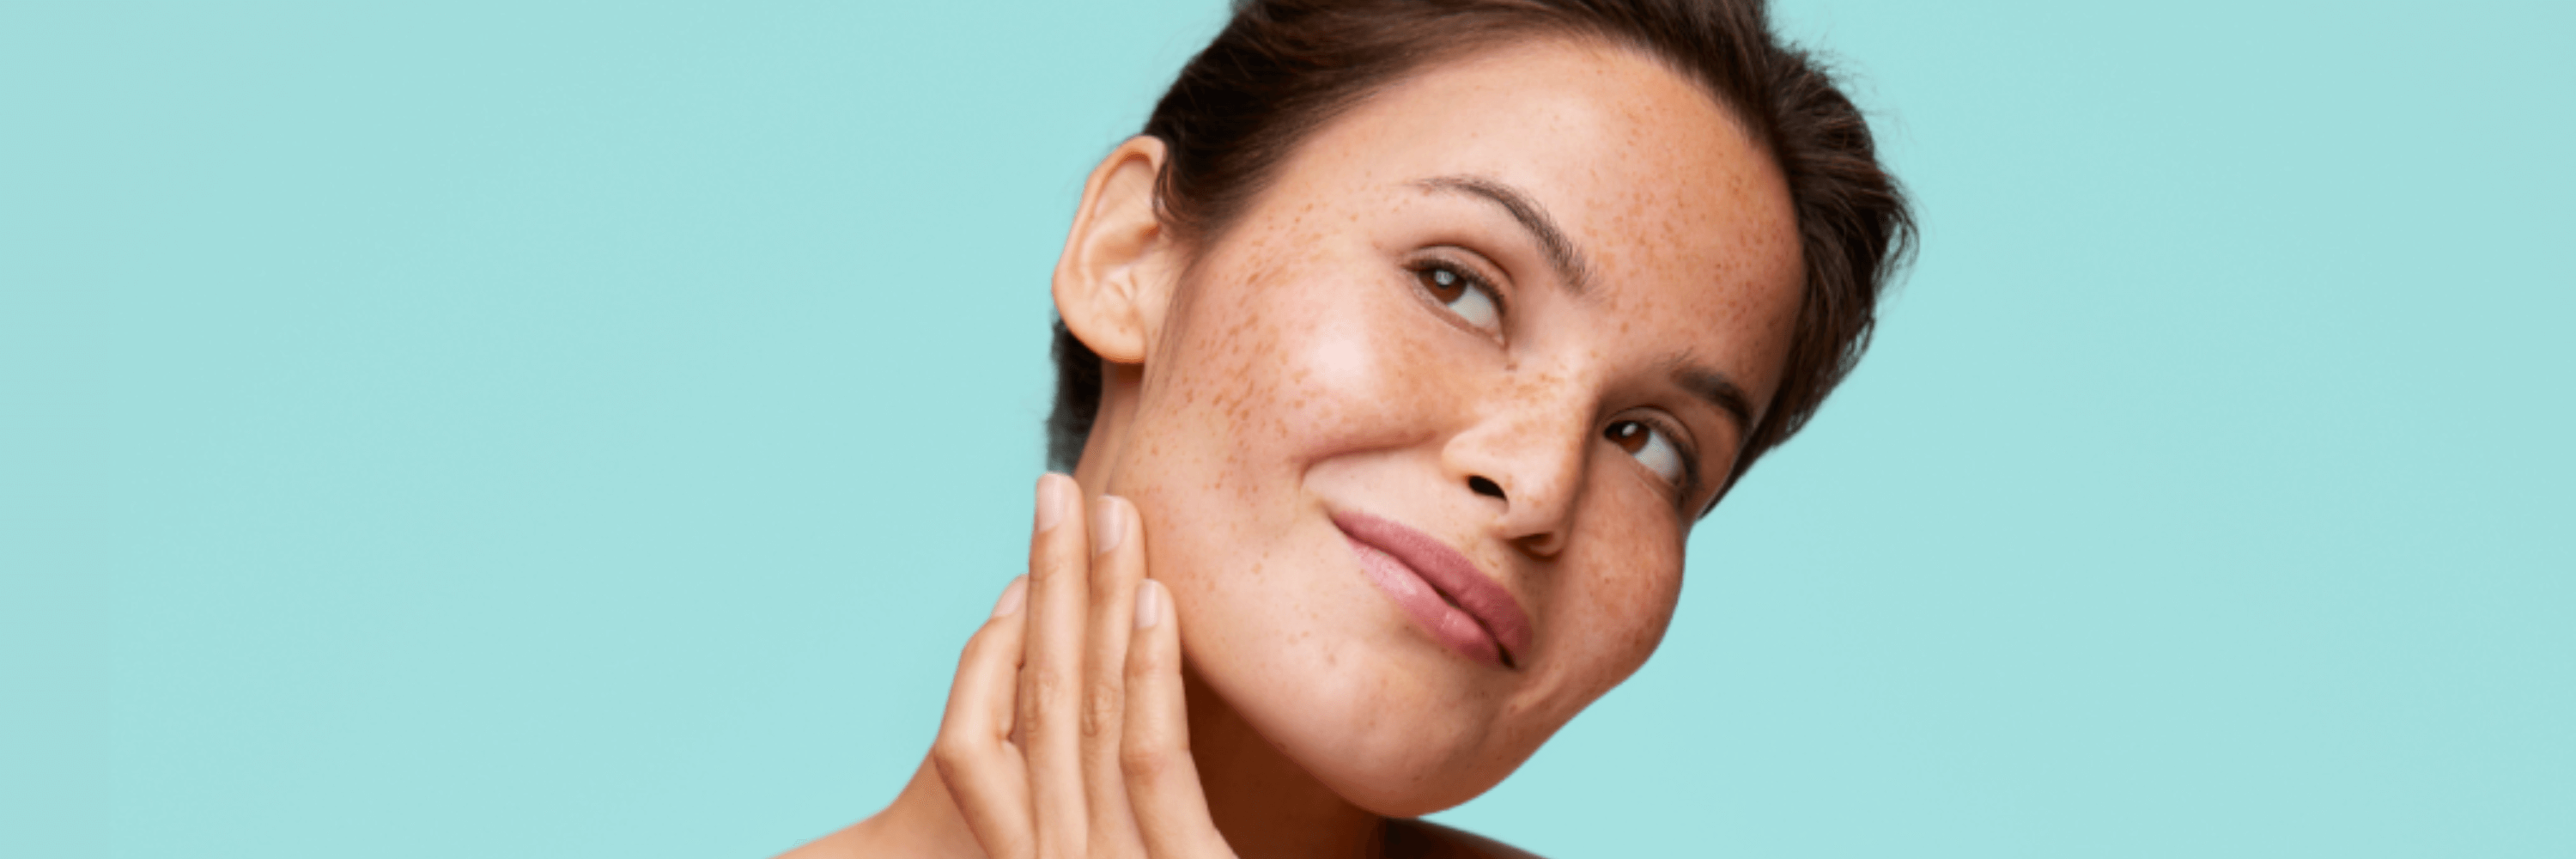 Exfoliërend enzym: verbetert de huidteint en huidtextuur